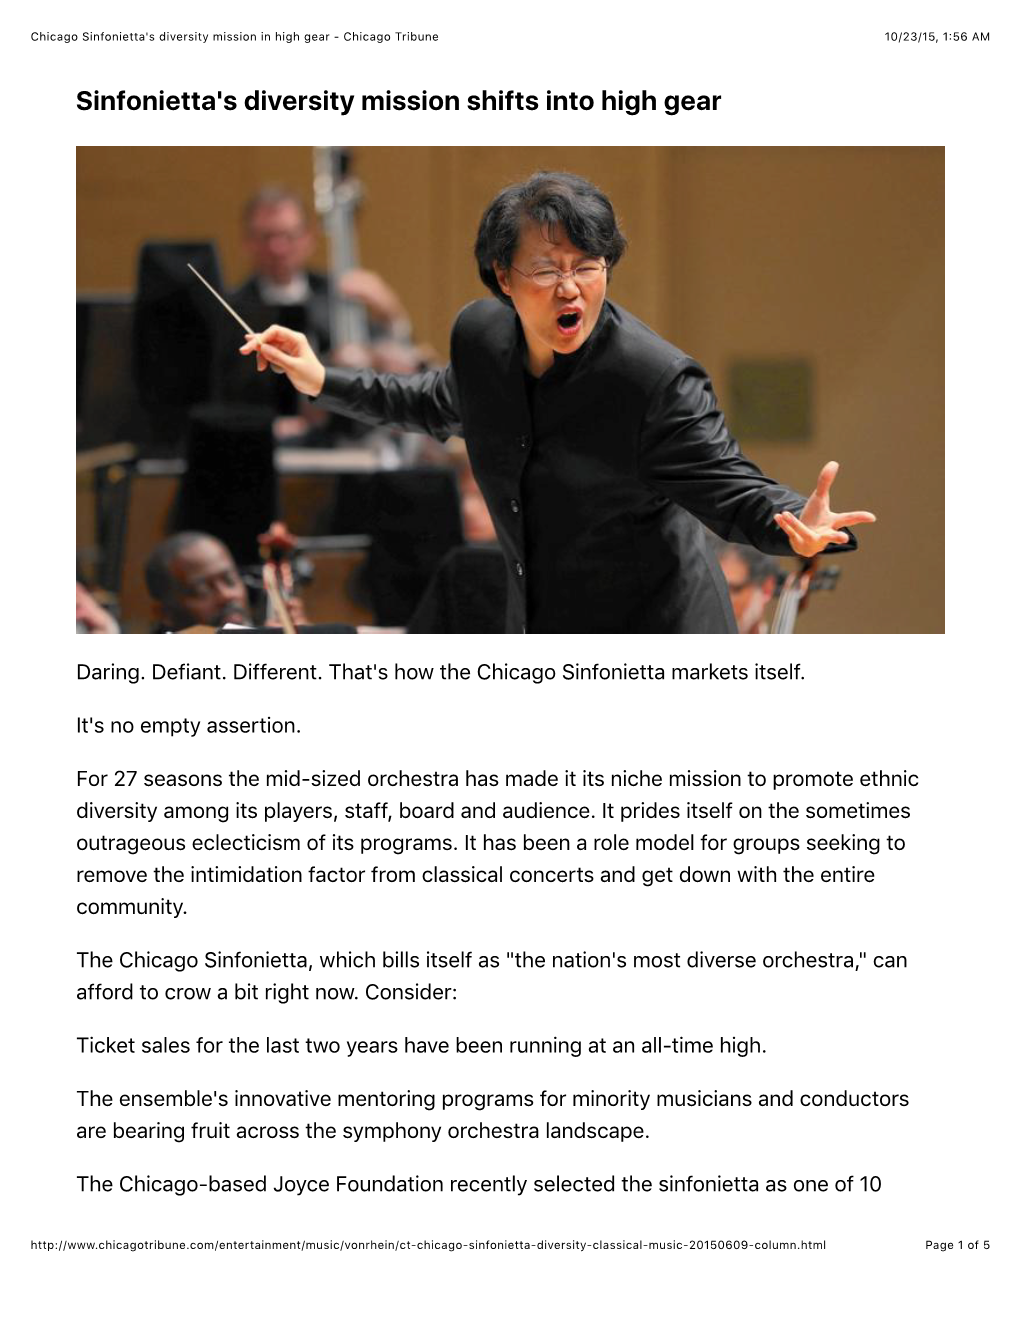 Chicago Sinfonietta's Diversity Mission in High Gear - Chicago Tribune 10/23/15, 1:56 AM